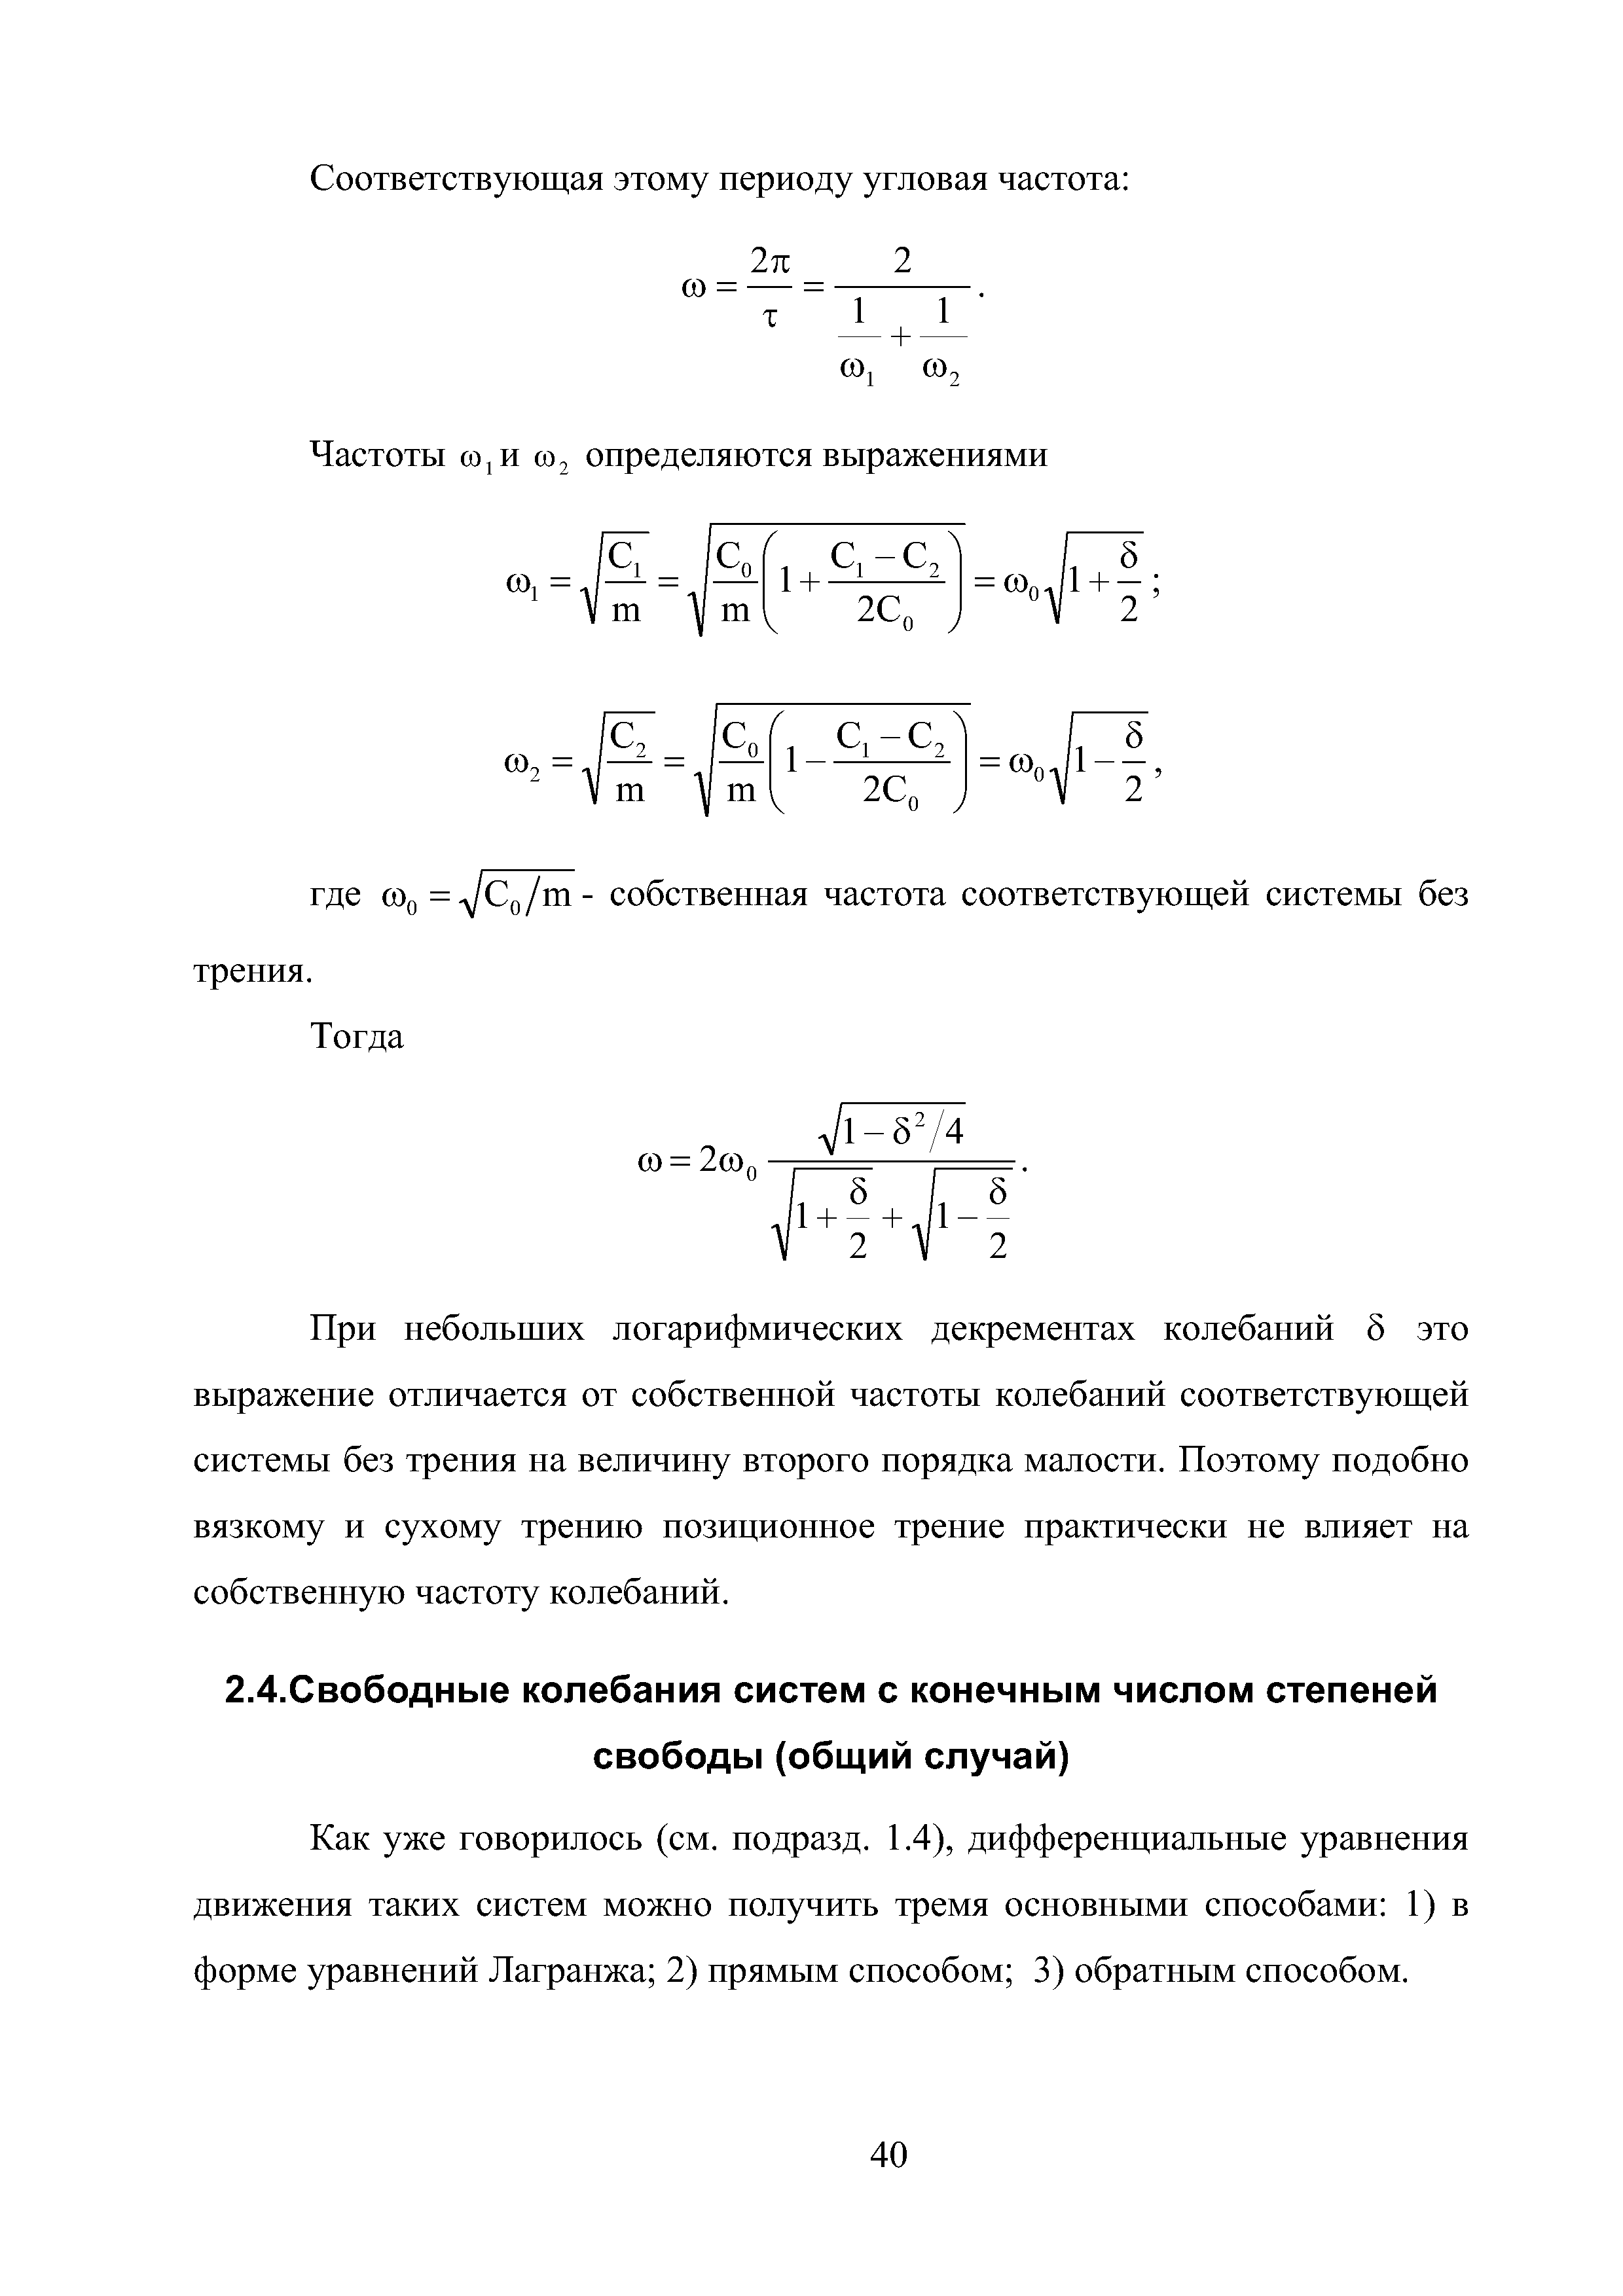 Как уже говорилось (см. подразд. 1.4), дифференциальные уравнения движения таких систем можно получить тремя основными способами 1) в форме уравнений Лагранжа 2) прямым способом 3) обратным способом.
